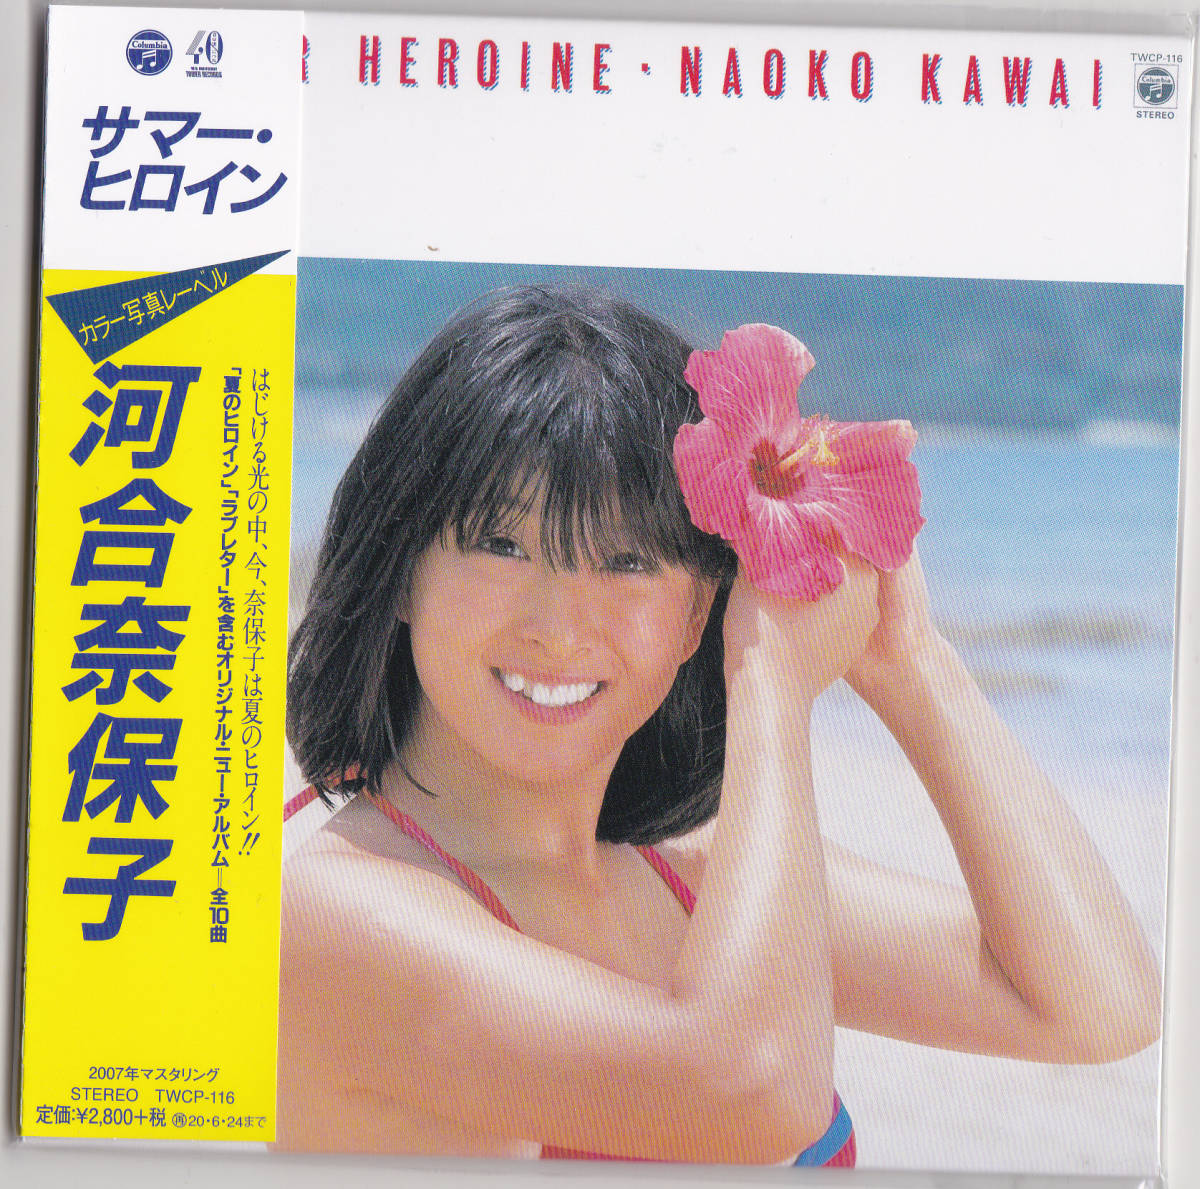 [ включая доставку быстрое решение ] нераспечатанный новый товар Kawai Naoko #[ summer * героиня ]< первый раз производство ограничение запись ># CD / бумага жакет бумага jacket 